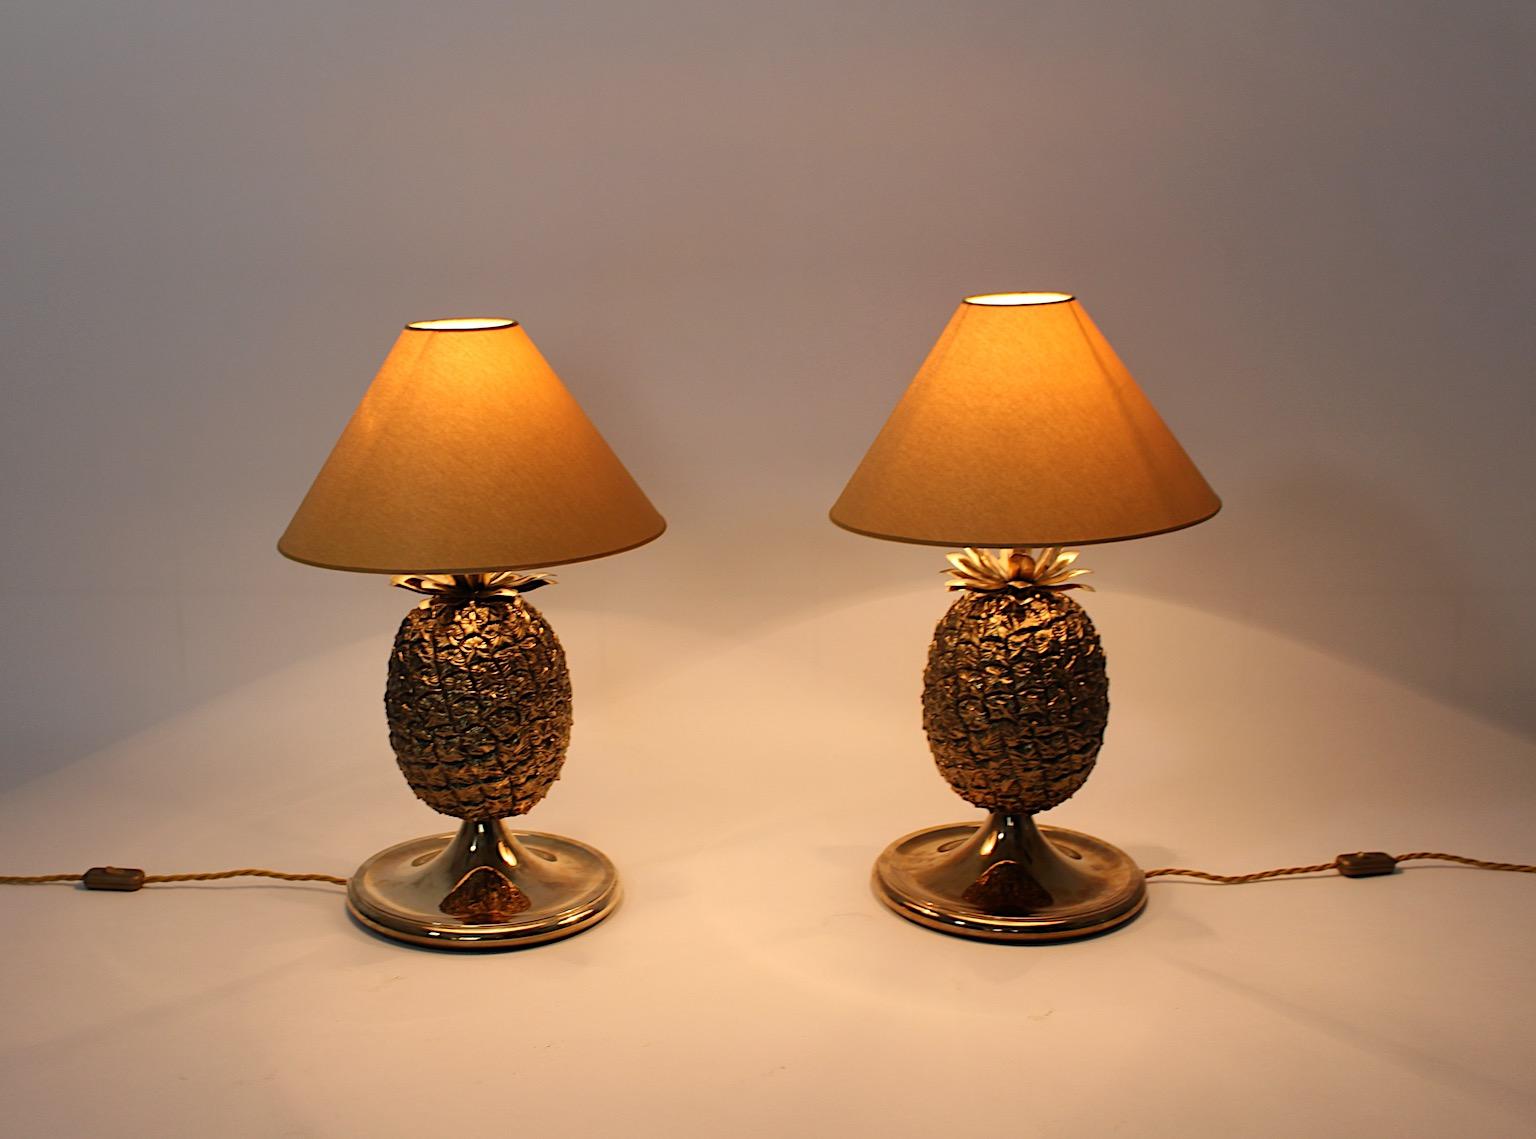 Hollywood Regency Style Vintage organische Ananas wie Tischlampen Duo Paar  Um 1970, Italien.
Ein wunderschönes Paar Tischlampen in Ananasform aus Messing, teilweise patiniert, mit neuen maßgeschneiderten und handgefertigten Lampenschirmen in